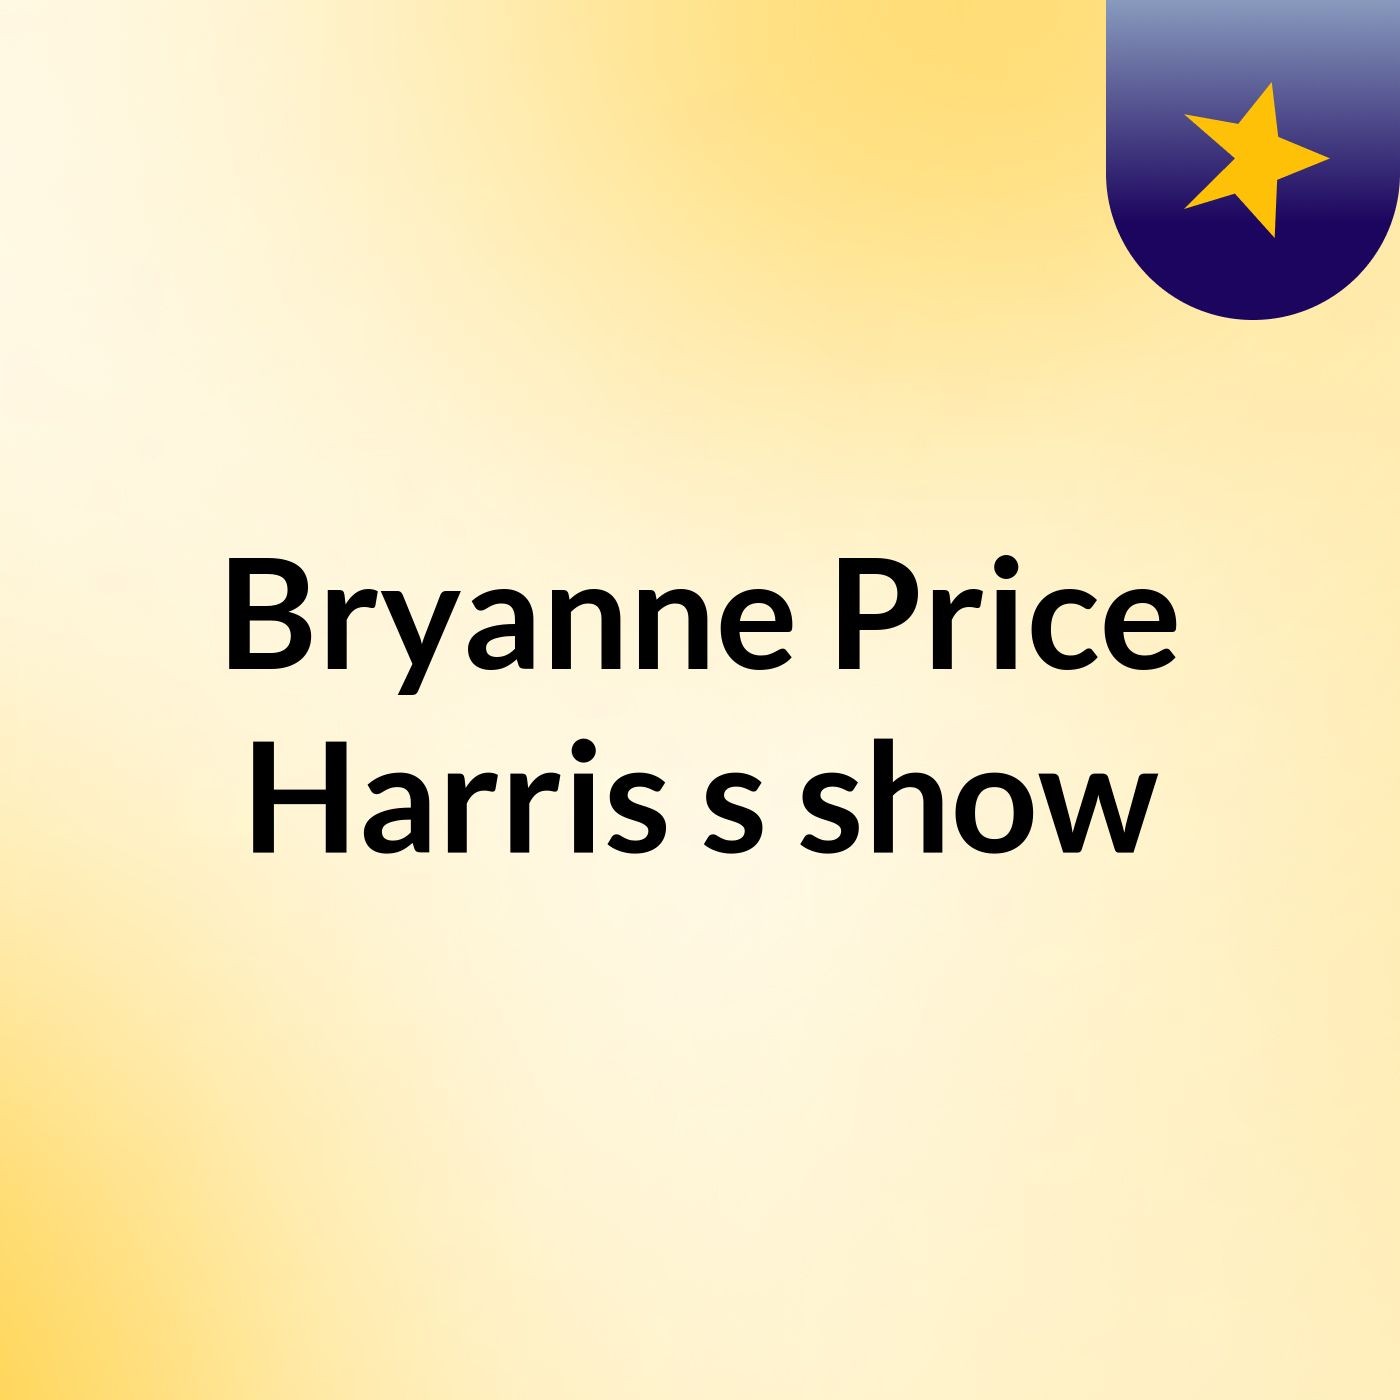 Bryanne Price Harris's show